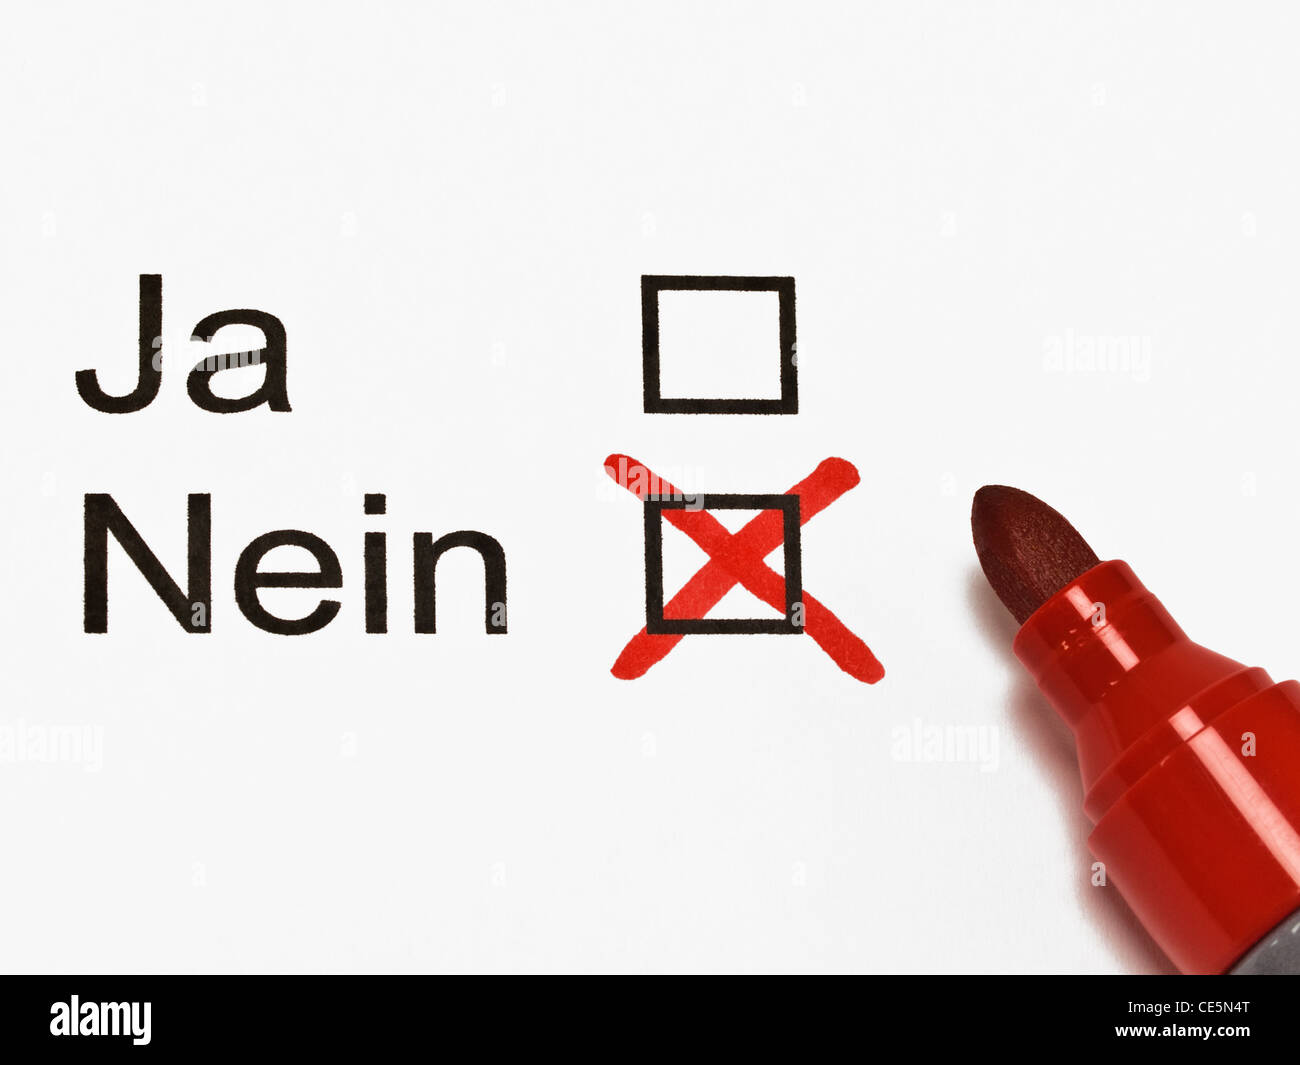 No " in tedesco è contrassegnata con una croce su un pezzo di carta.  Accanto è una penna rossa Foto stock - Alamy